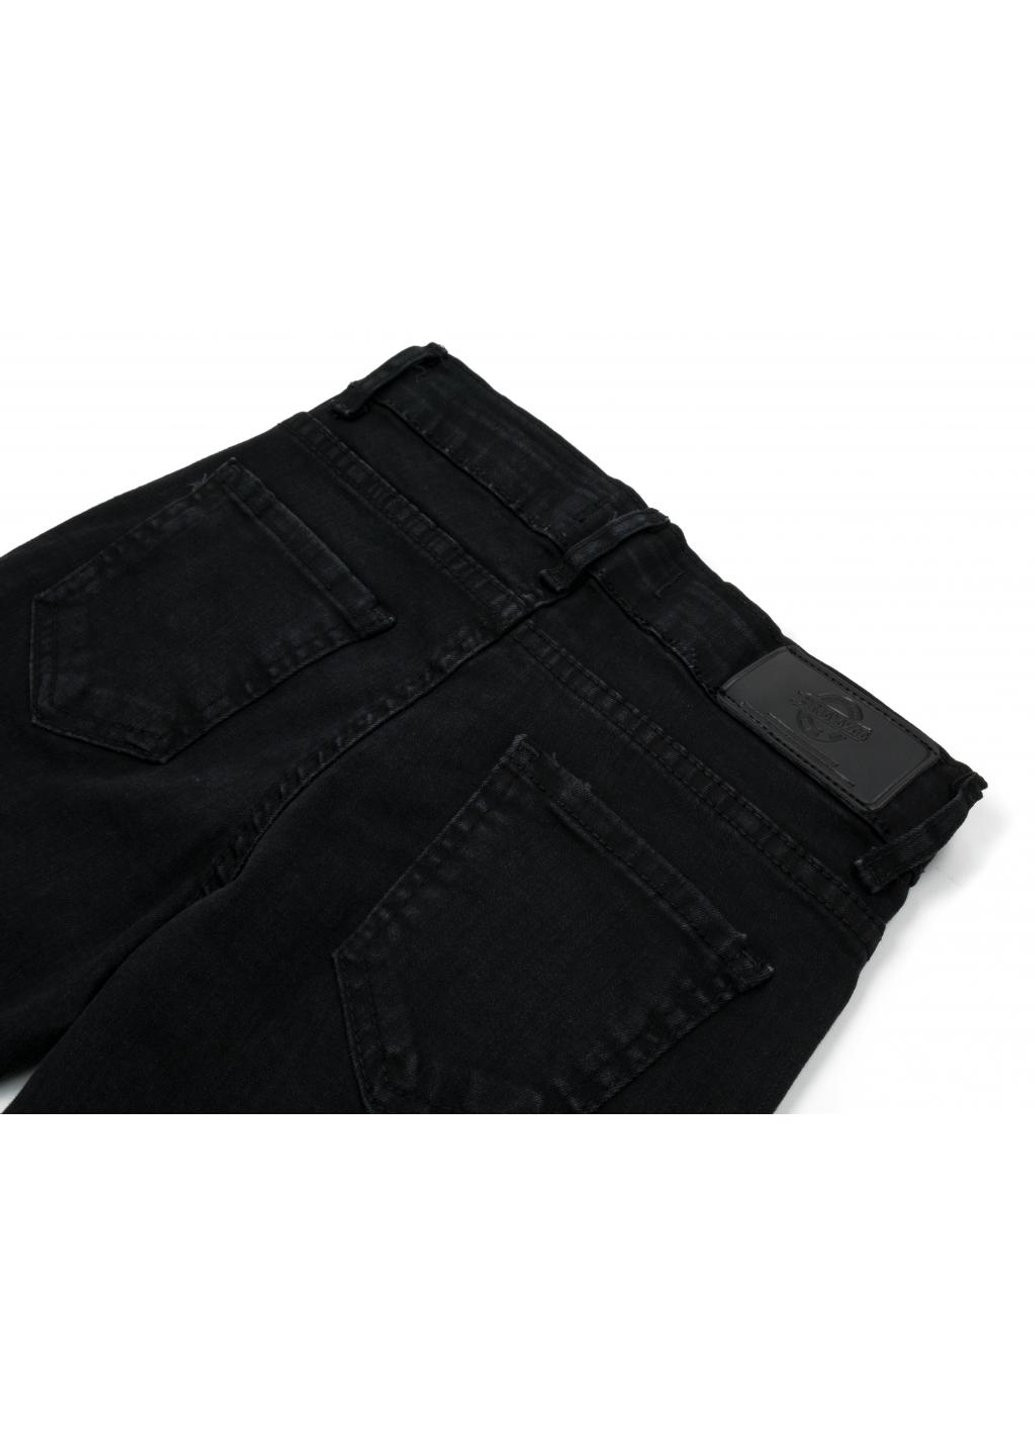 Черные демисезонные джинсы с дырками (20214-128g-black) Breeze